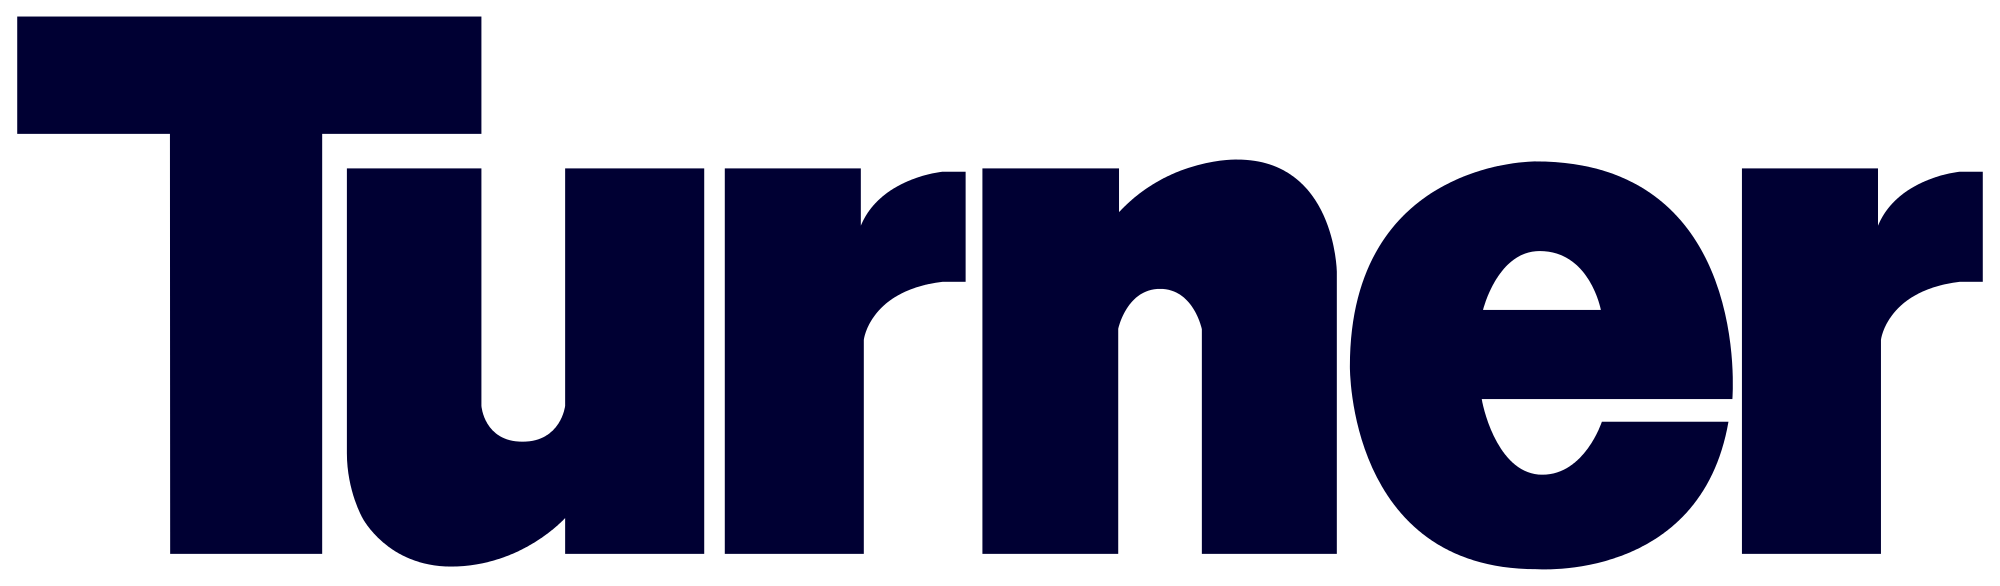 File:Turner-logo-320x320 (1).